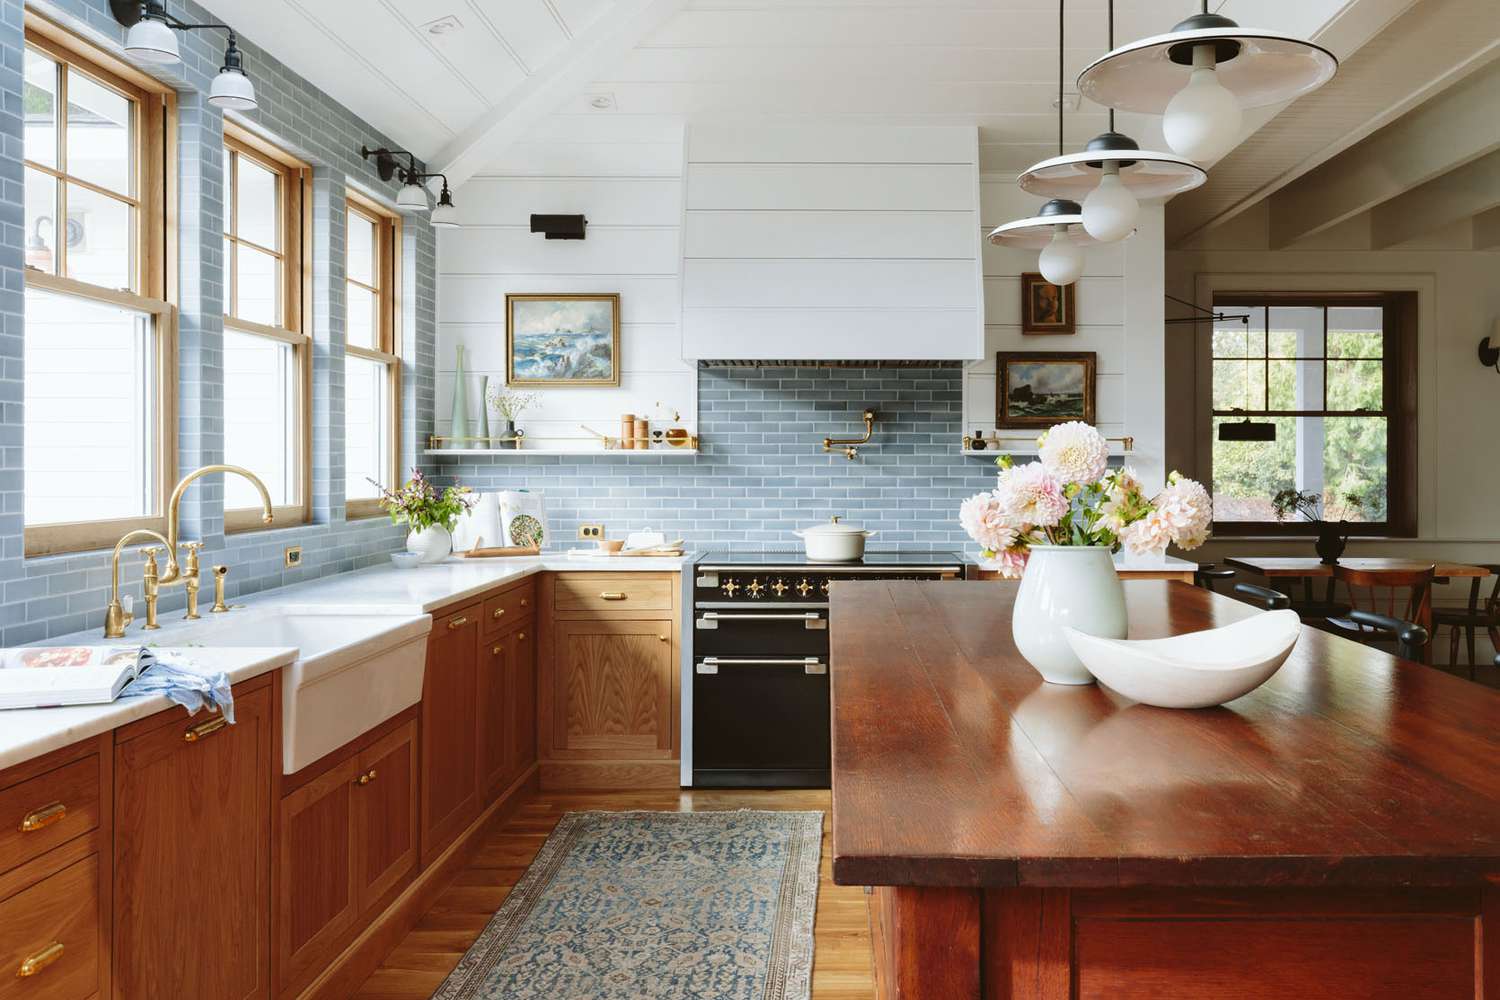 Eine Küche in Blau, Weiß und Holz